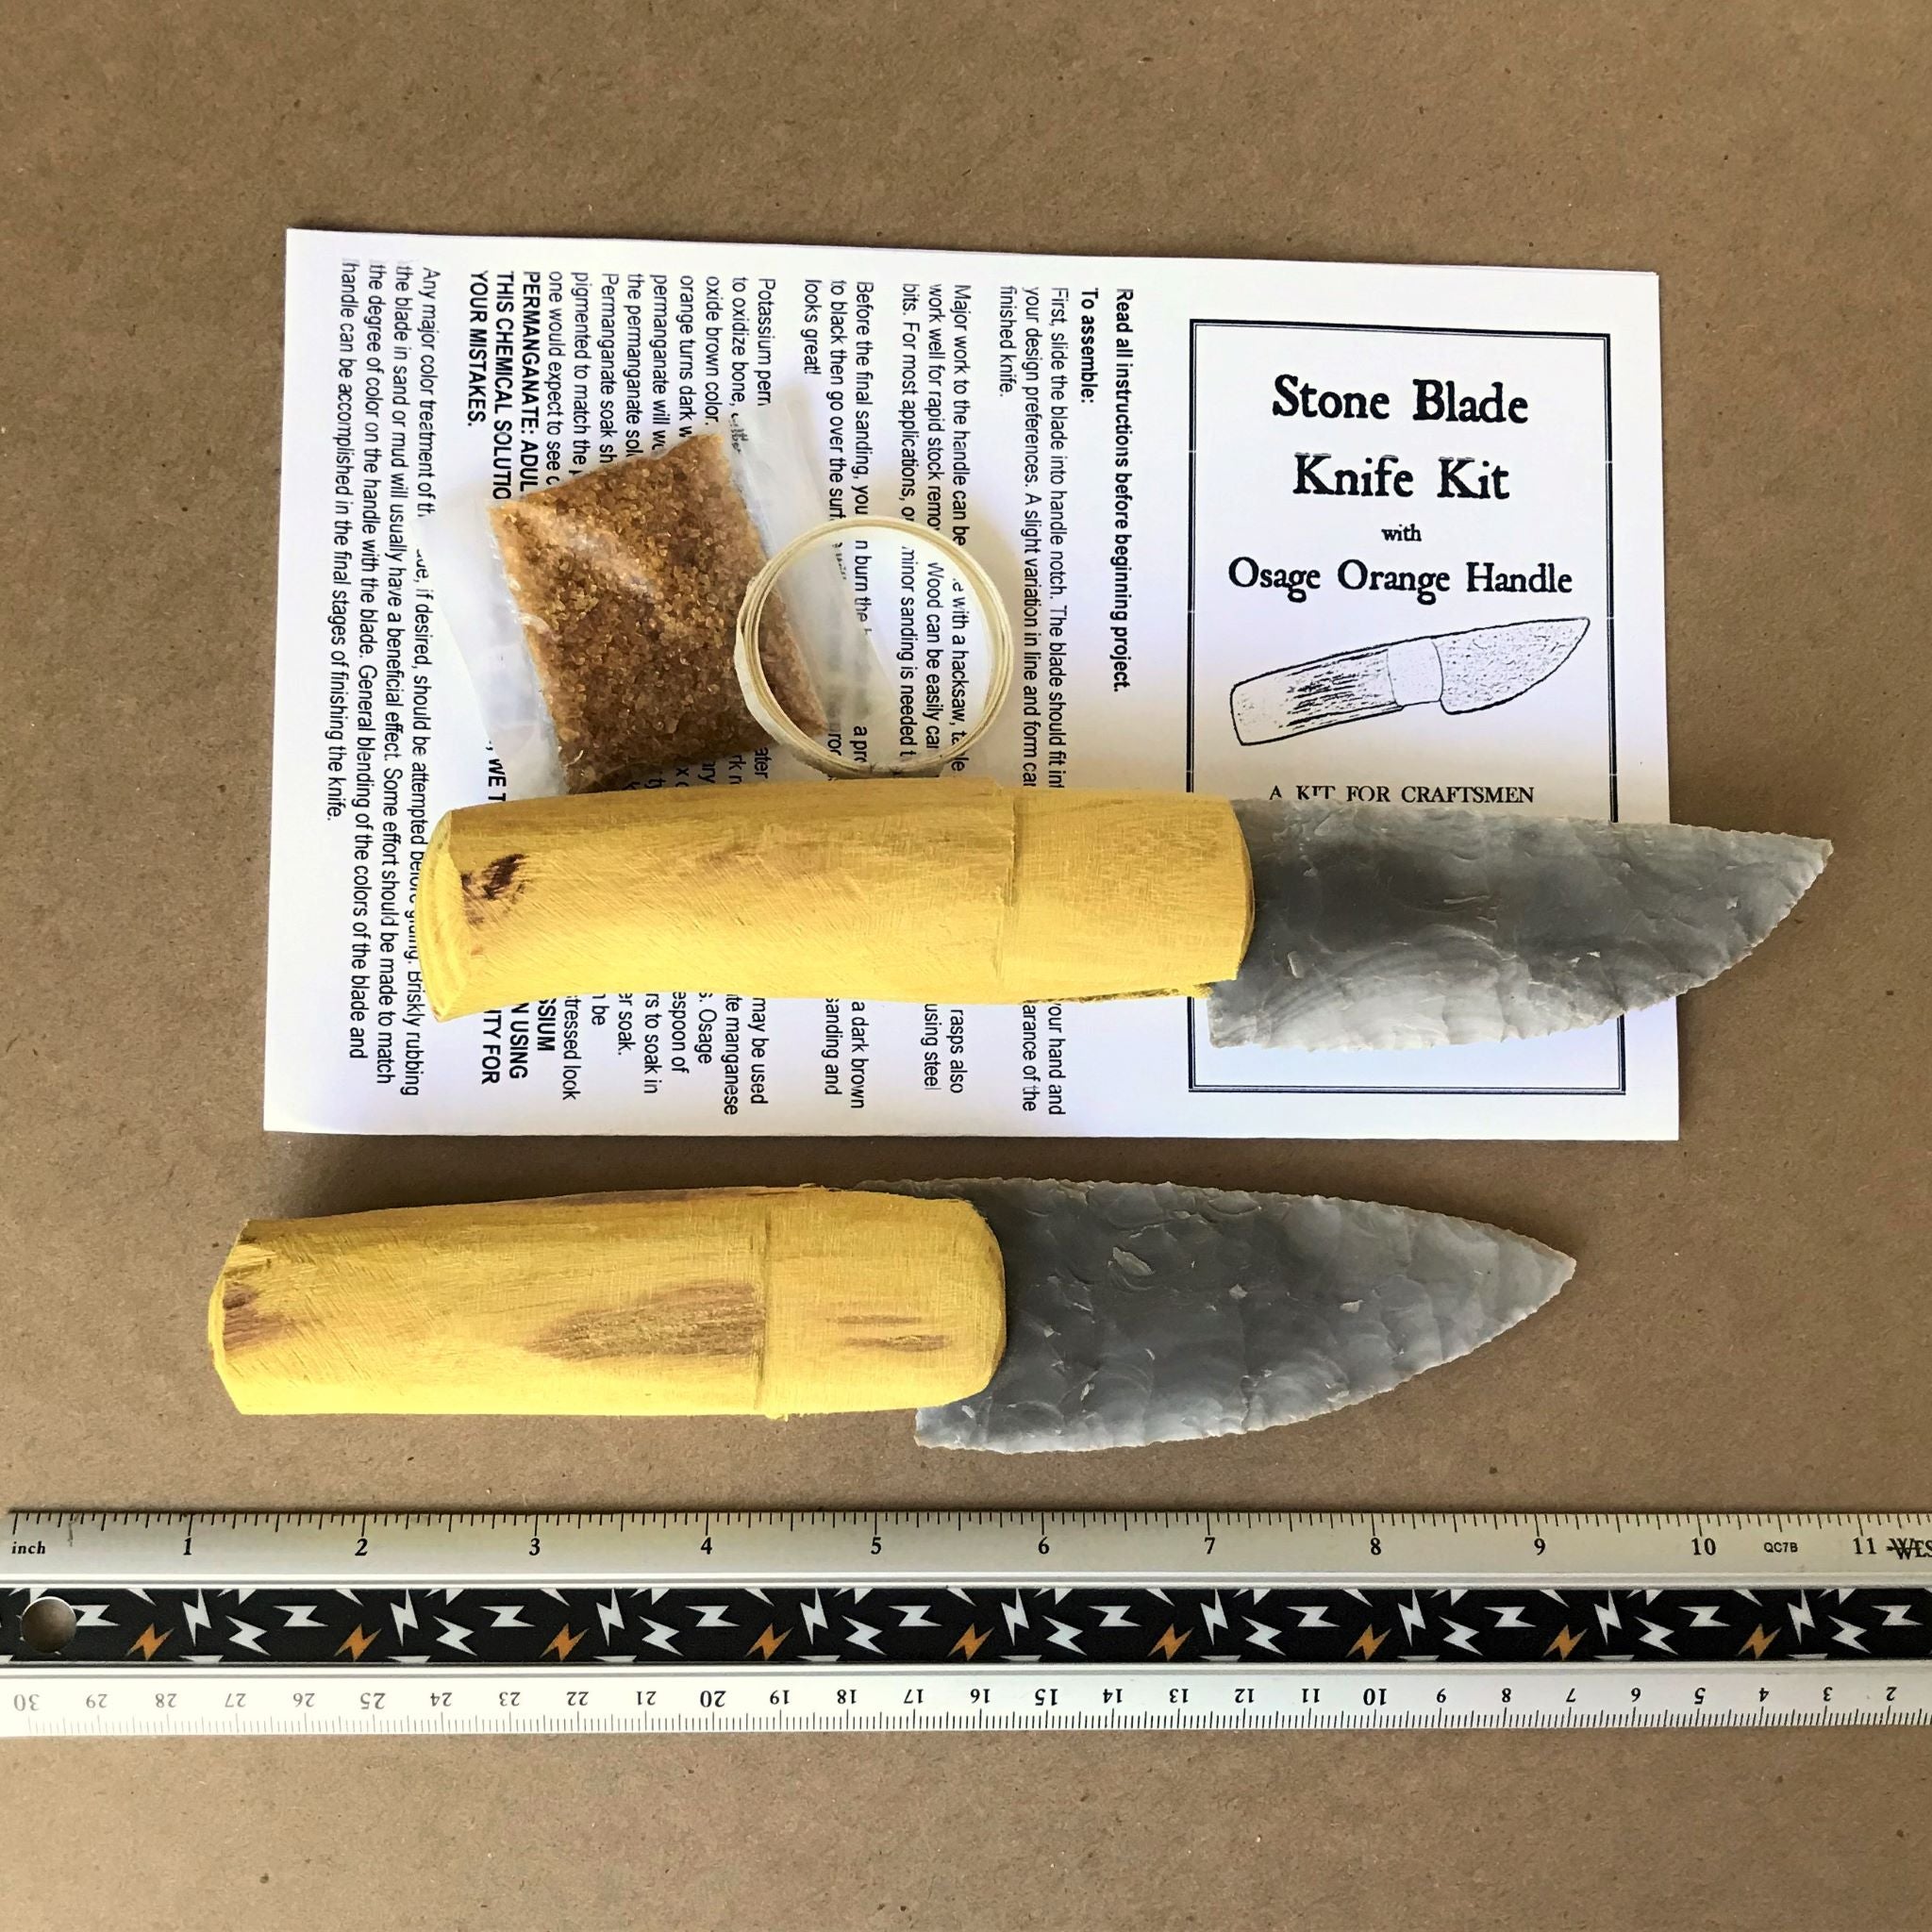 2 stone knife kits with Osage Orange handle, glue, hafting strip, label, instrucitons